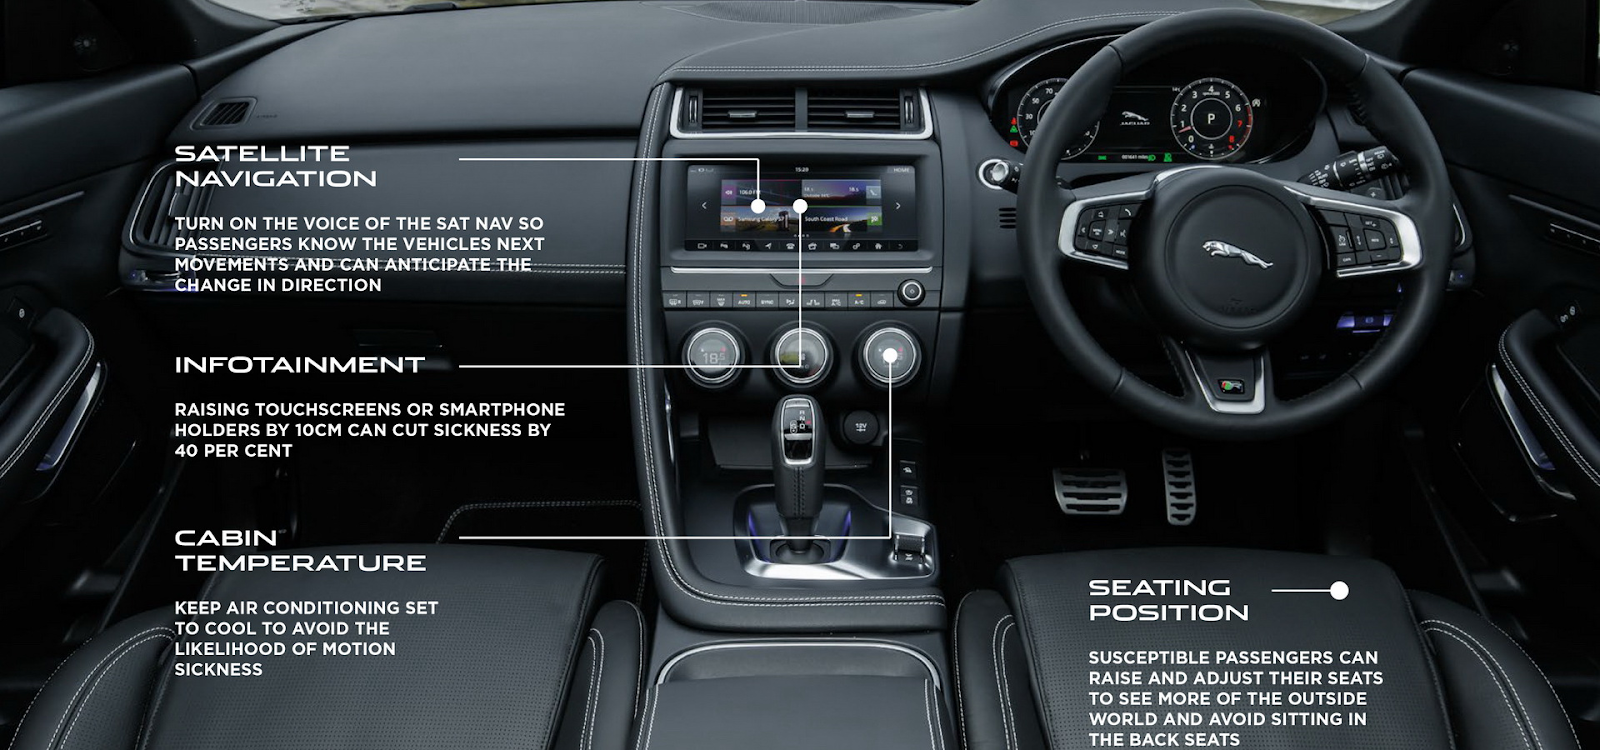 Біометричний сенсор і камера в салоні майбутніх автомобілів Jaguar Land Rover